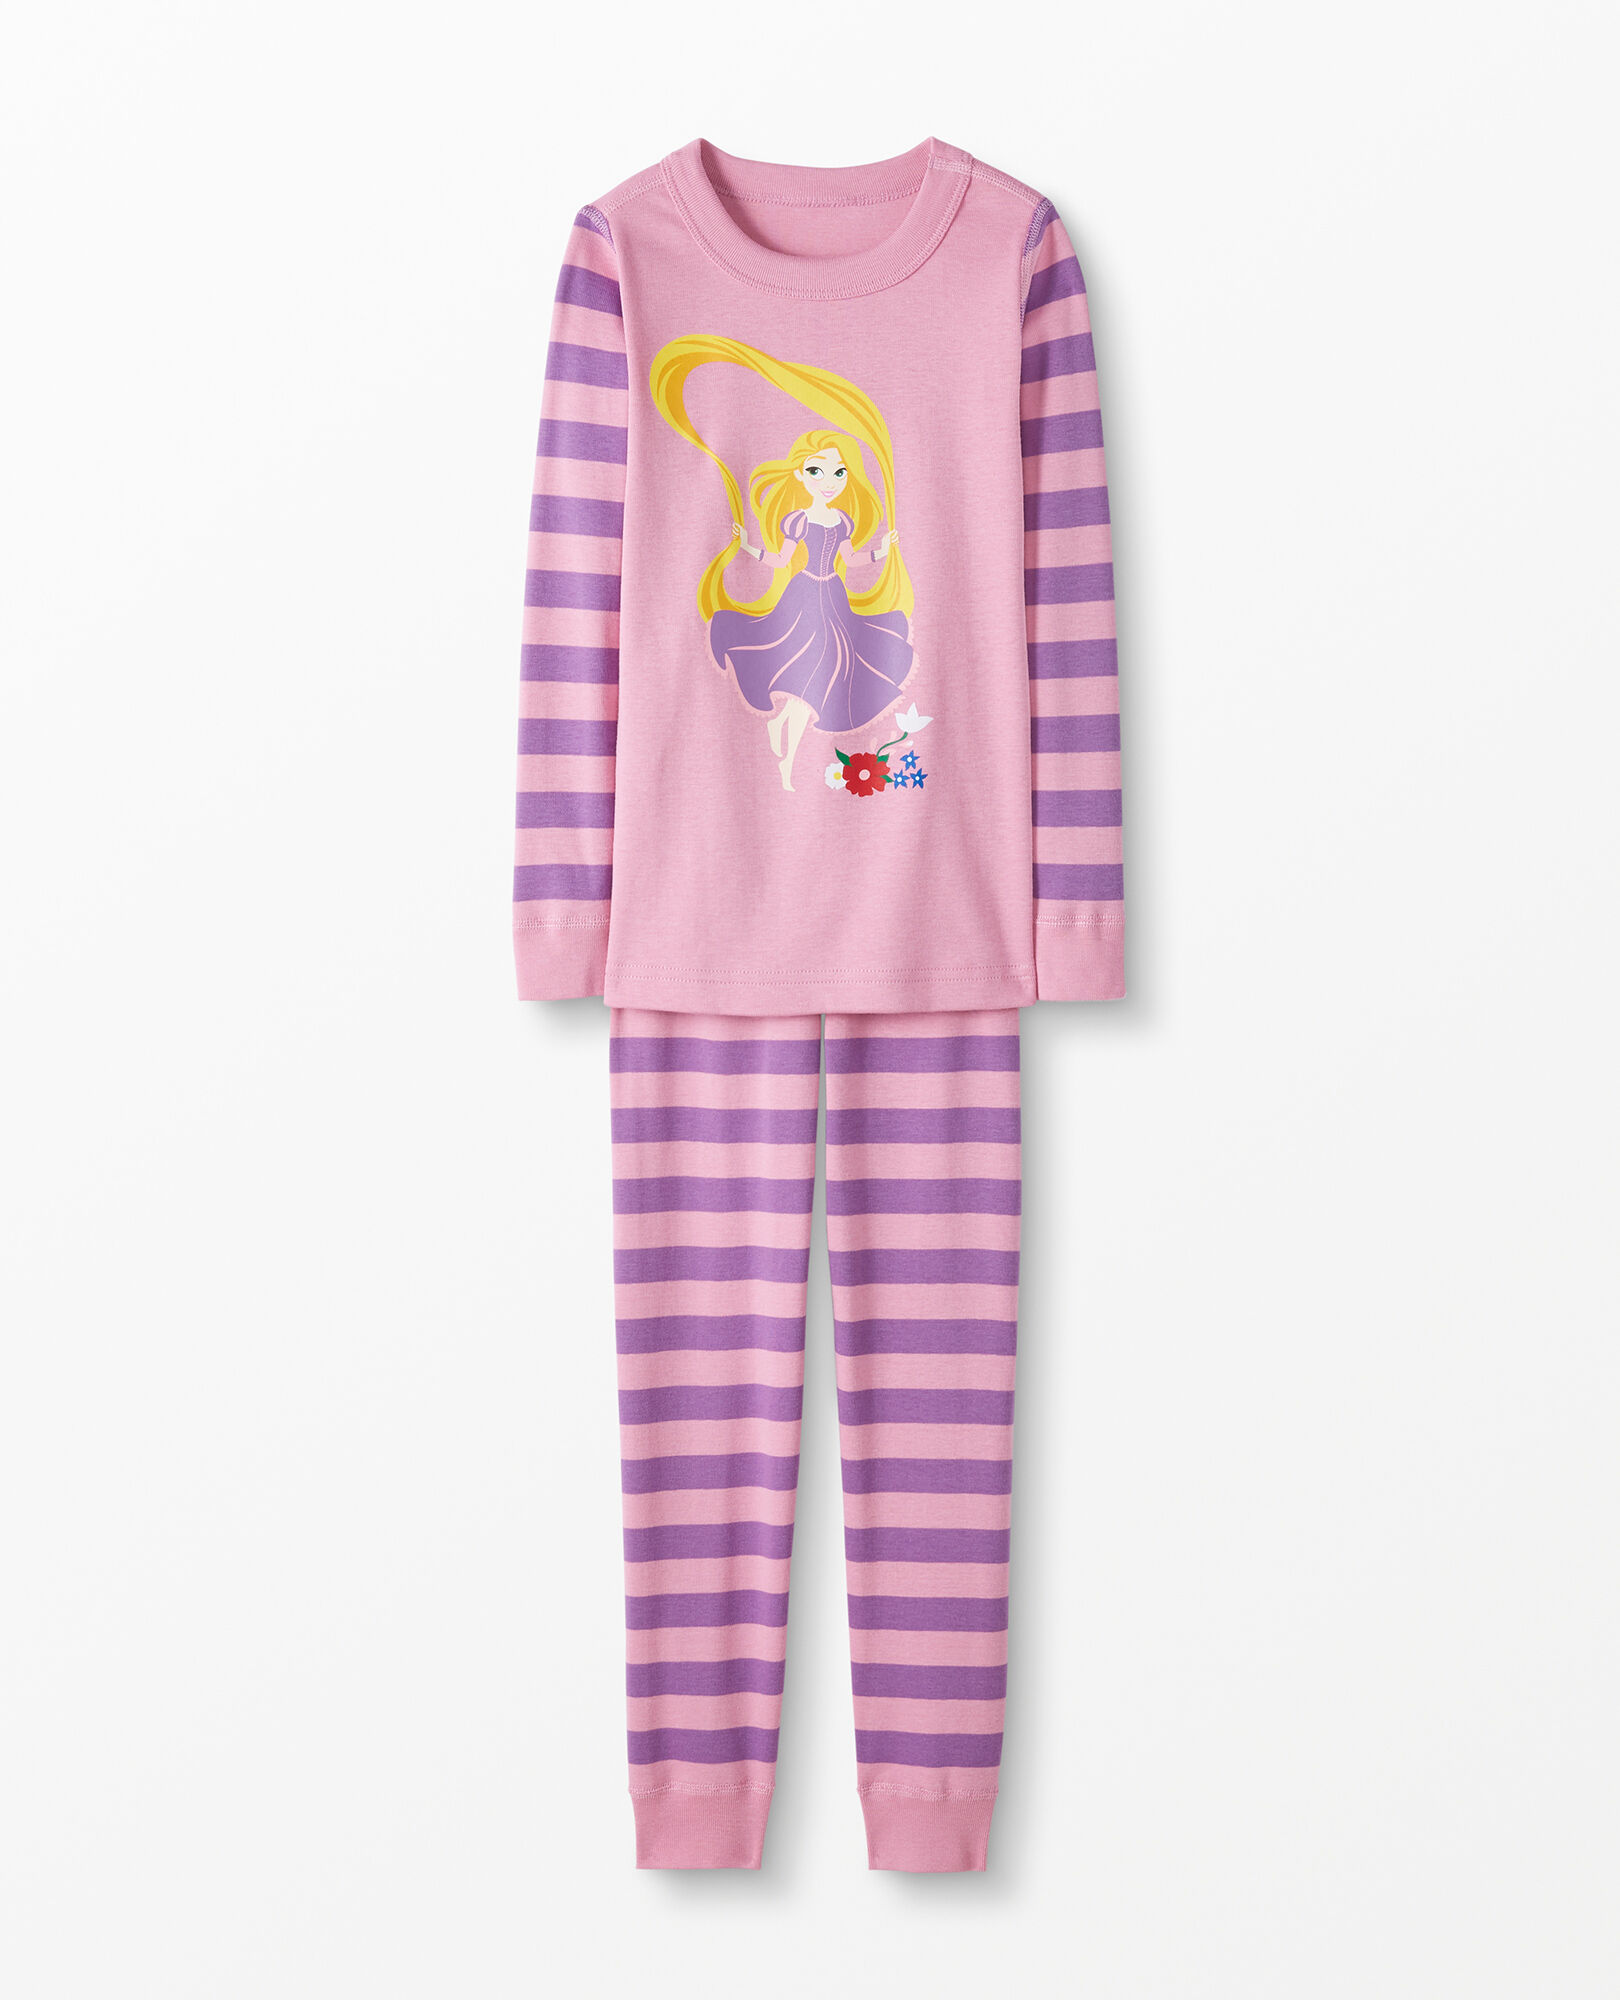 Disney Princess Pajamas | Hanna Andersson